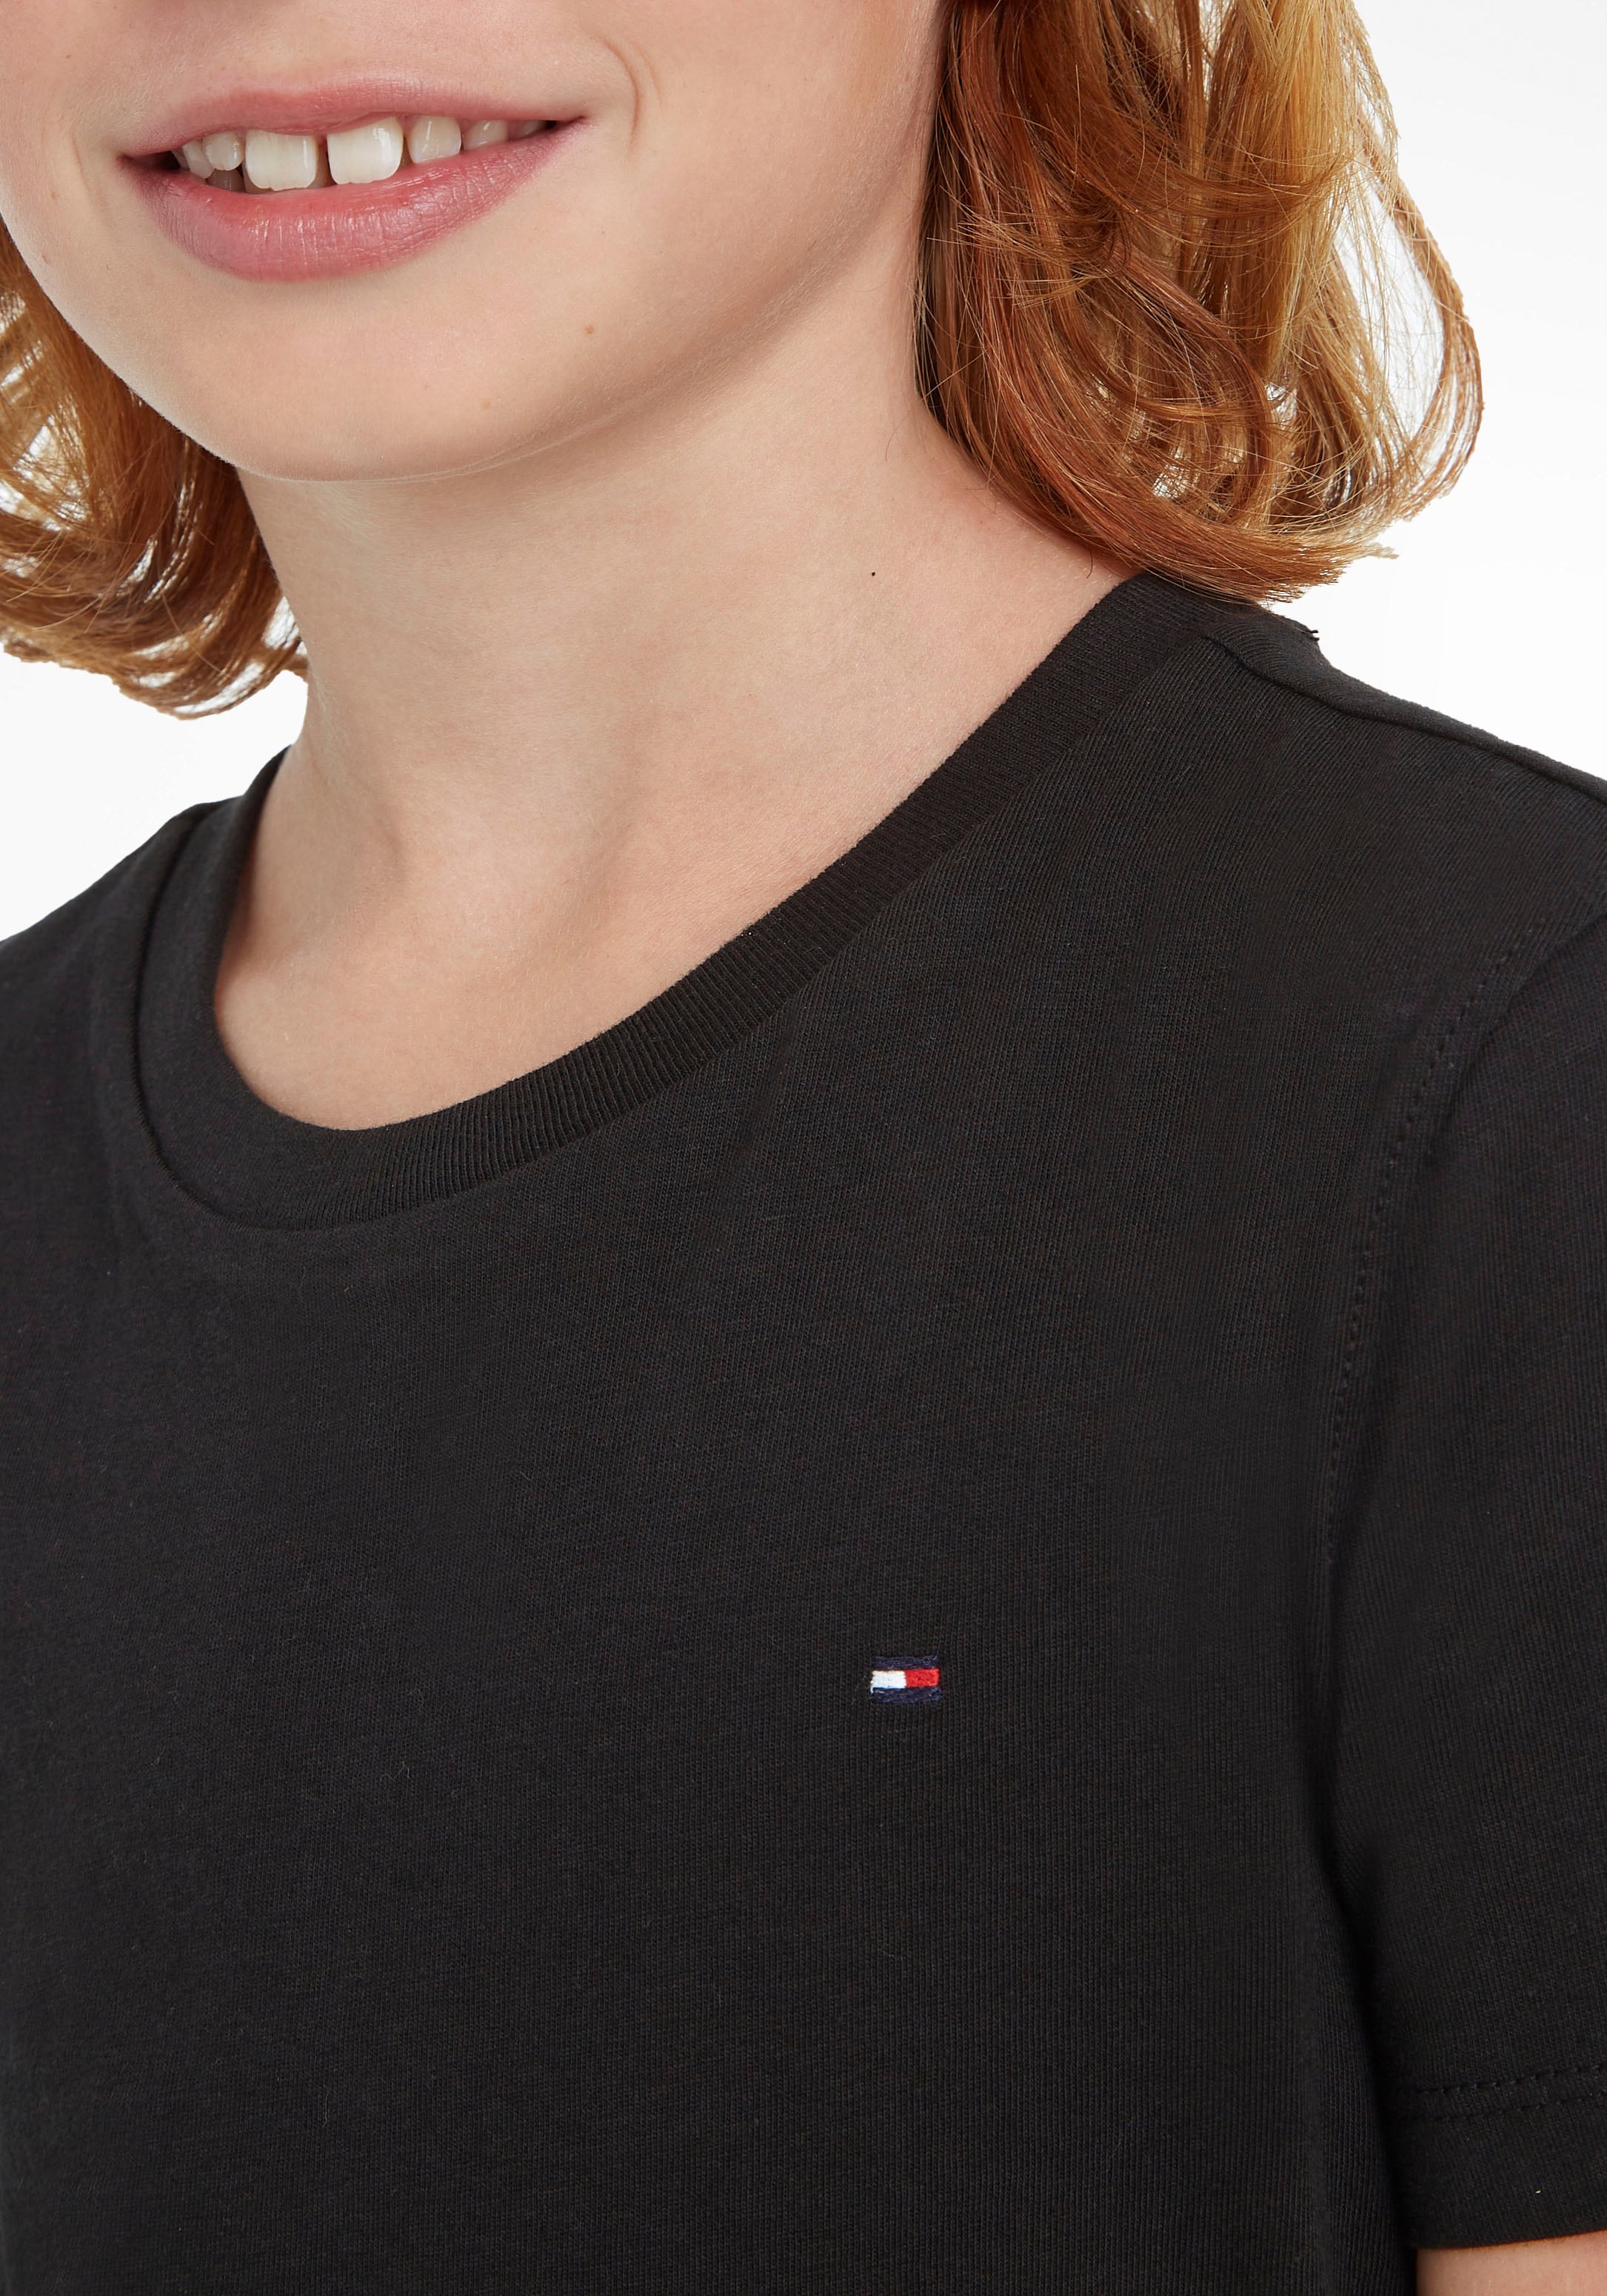 BASIC KNIT«, MiniMe,für Junior Hilfiger Kids Jungen CN »BOYS T-Shirt bei Kinder Tommy